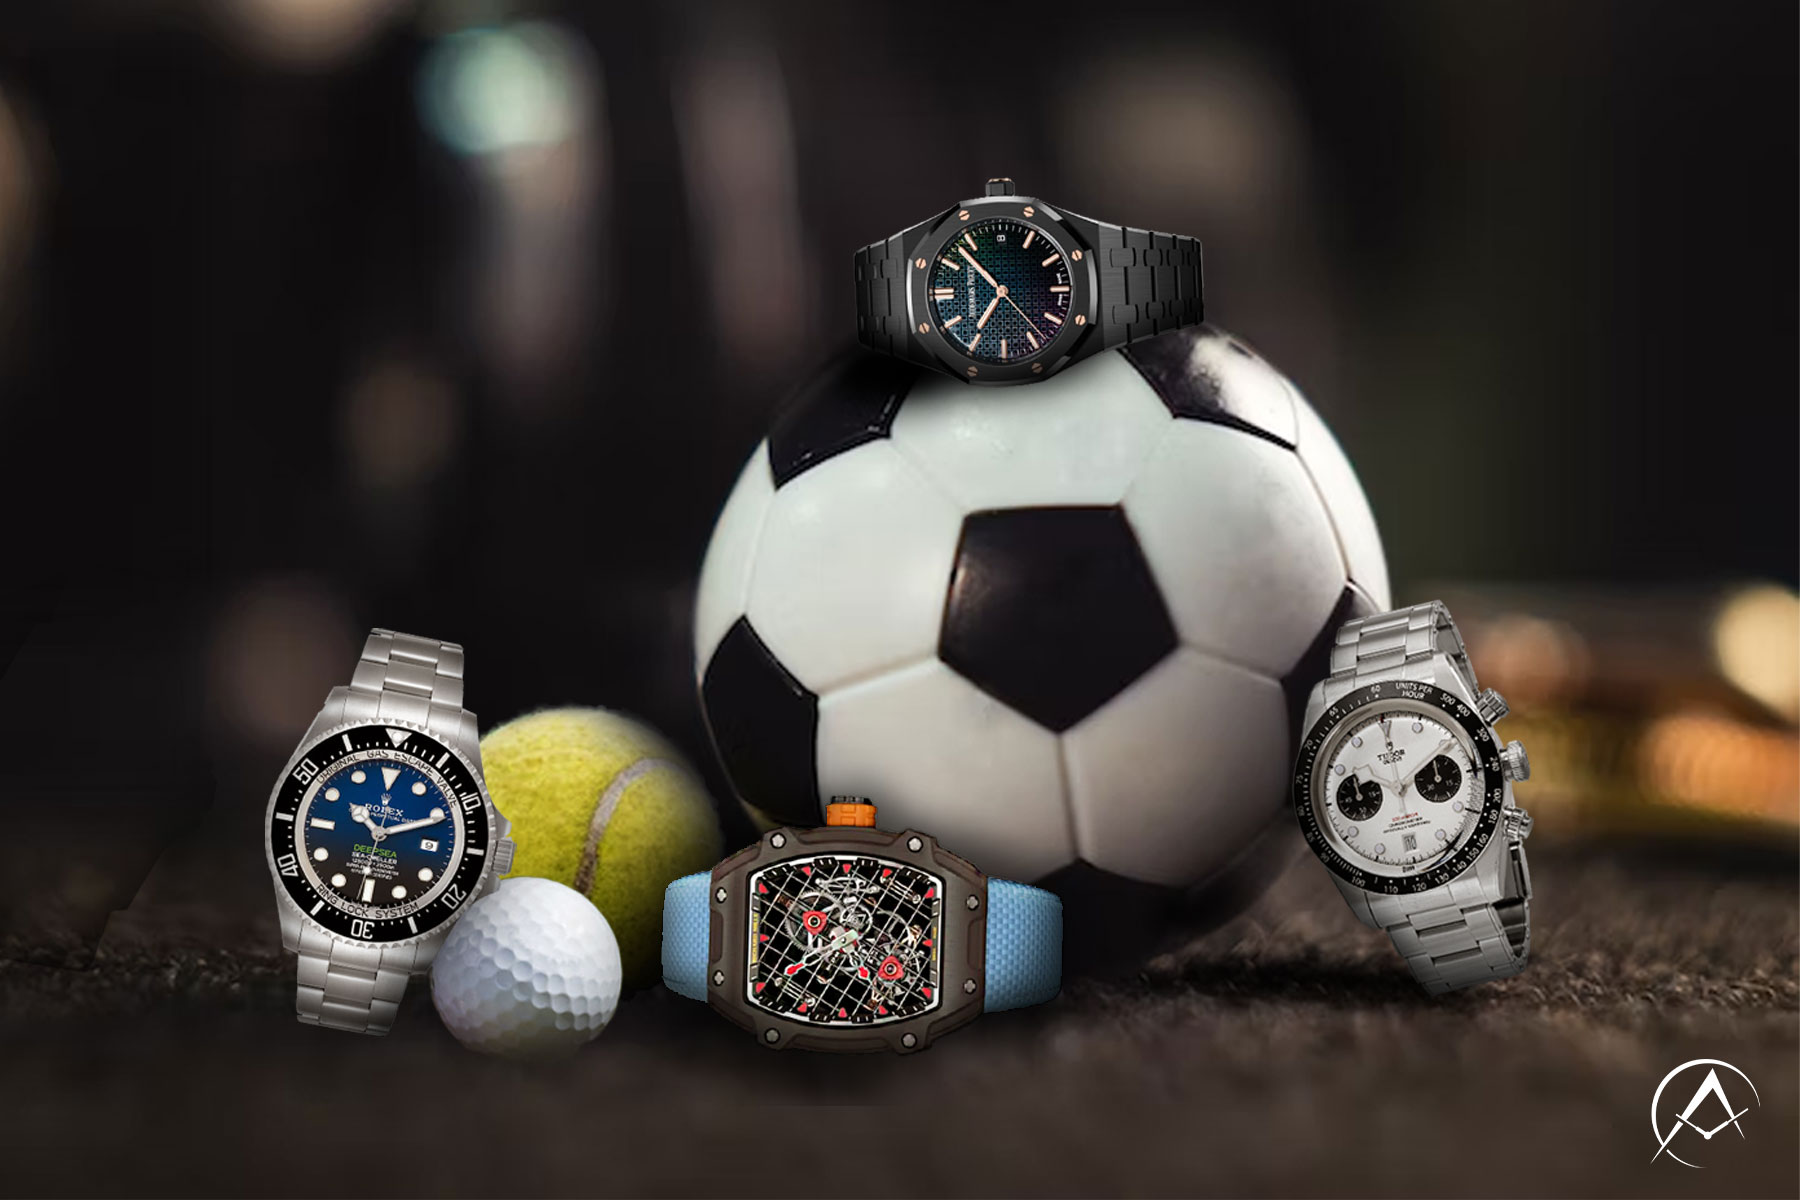 Soccer Ball, Tennis Ball, Golf Ball Surrounds a Rolex Submariner Deepsea, Richard Mille timepiece, Audemars Piguet Royal Oak, and Rolex Deepsea Sea-Dweller